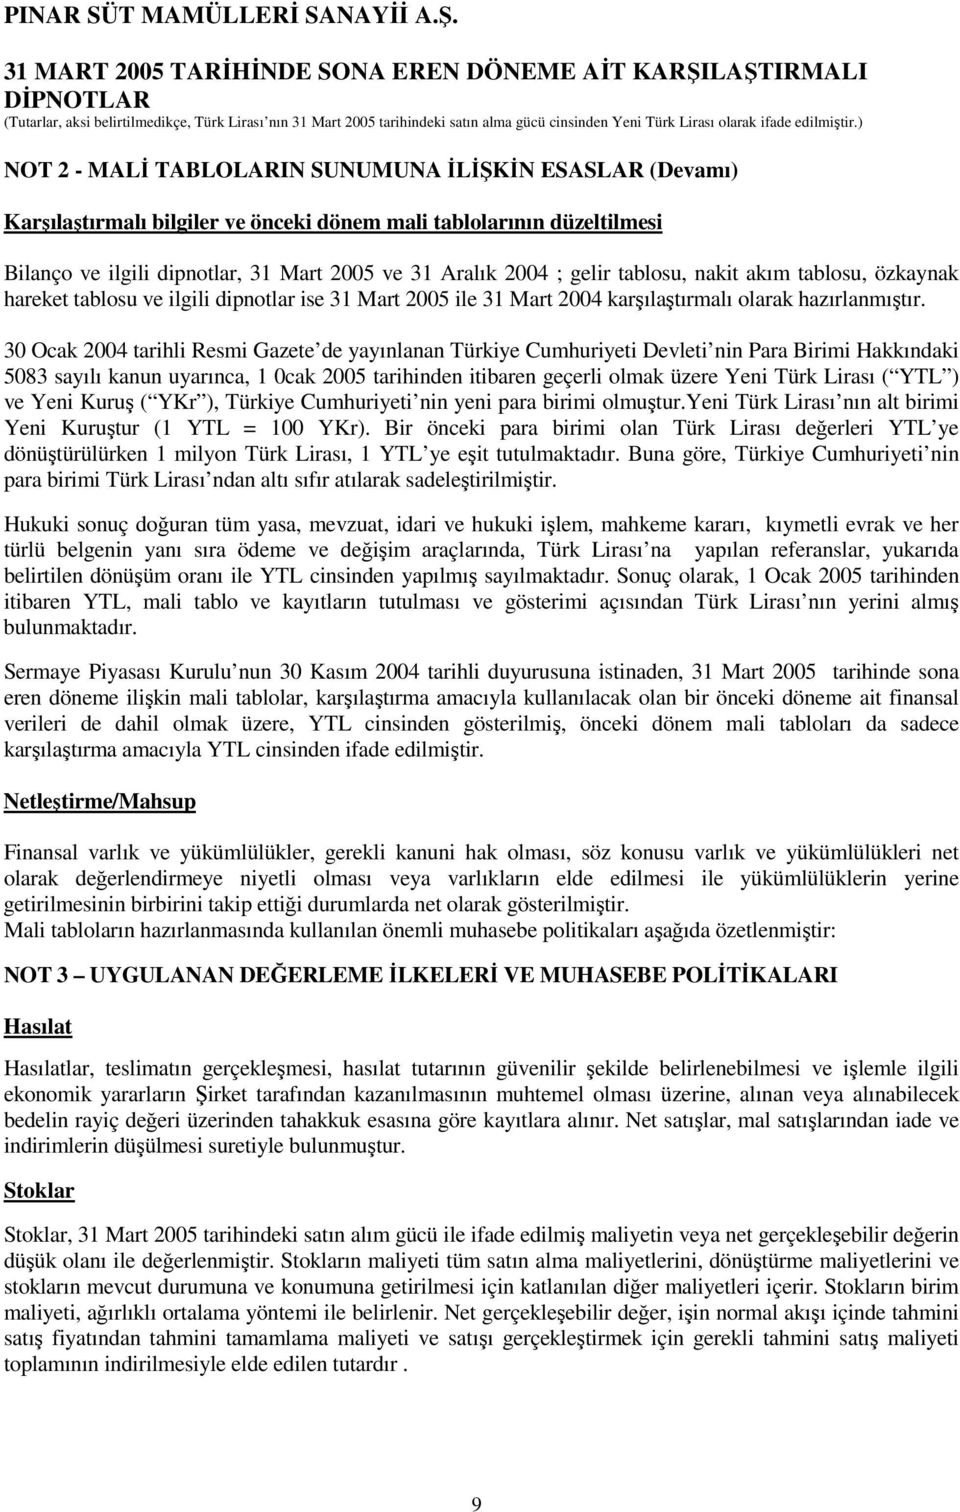 30 Ocak 2004 tarihli Resmi Gazete de yayınlanan Türkiye Cumhuriyeti Devleti nin Para Birimi Hakkındaki 5083 sayılı kanun uyarınca, 1 0cak 2005 tarihinden itibaren geçerli olmak üzere Yeni Türk Lirası